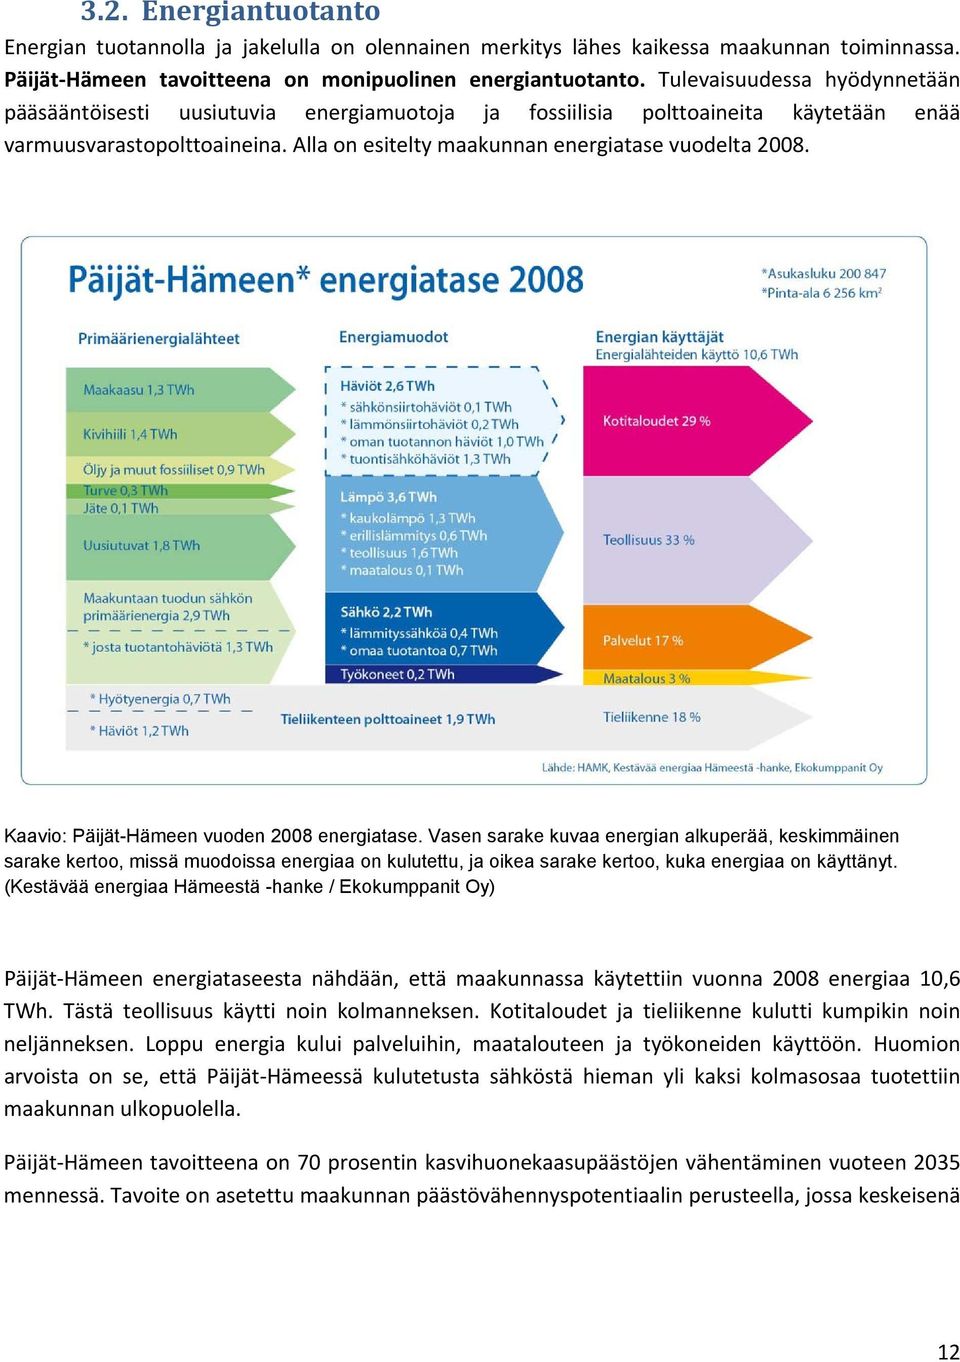 Kaavio: Päijät-Hämeen vuoden 2008 energiatase.